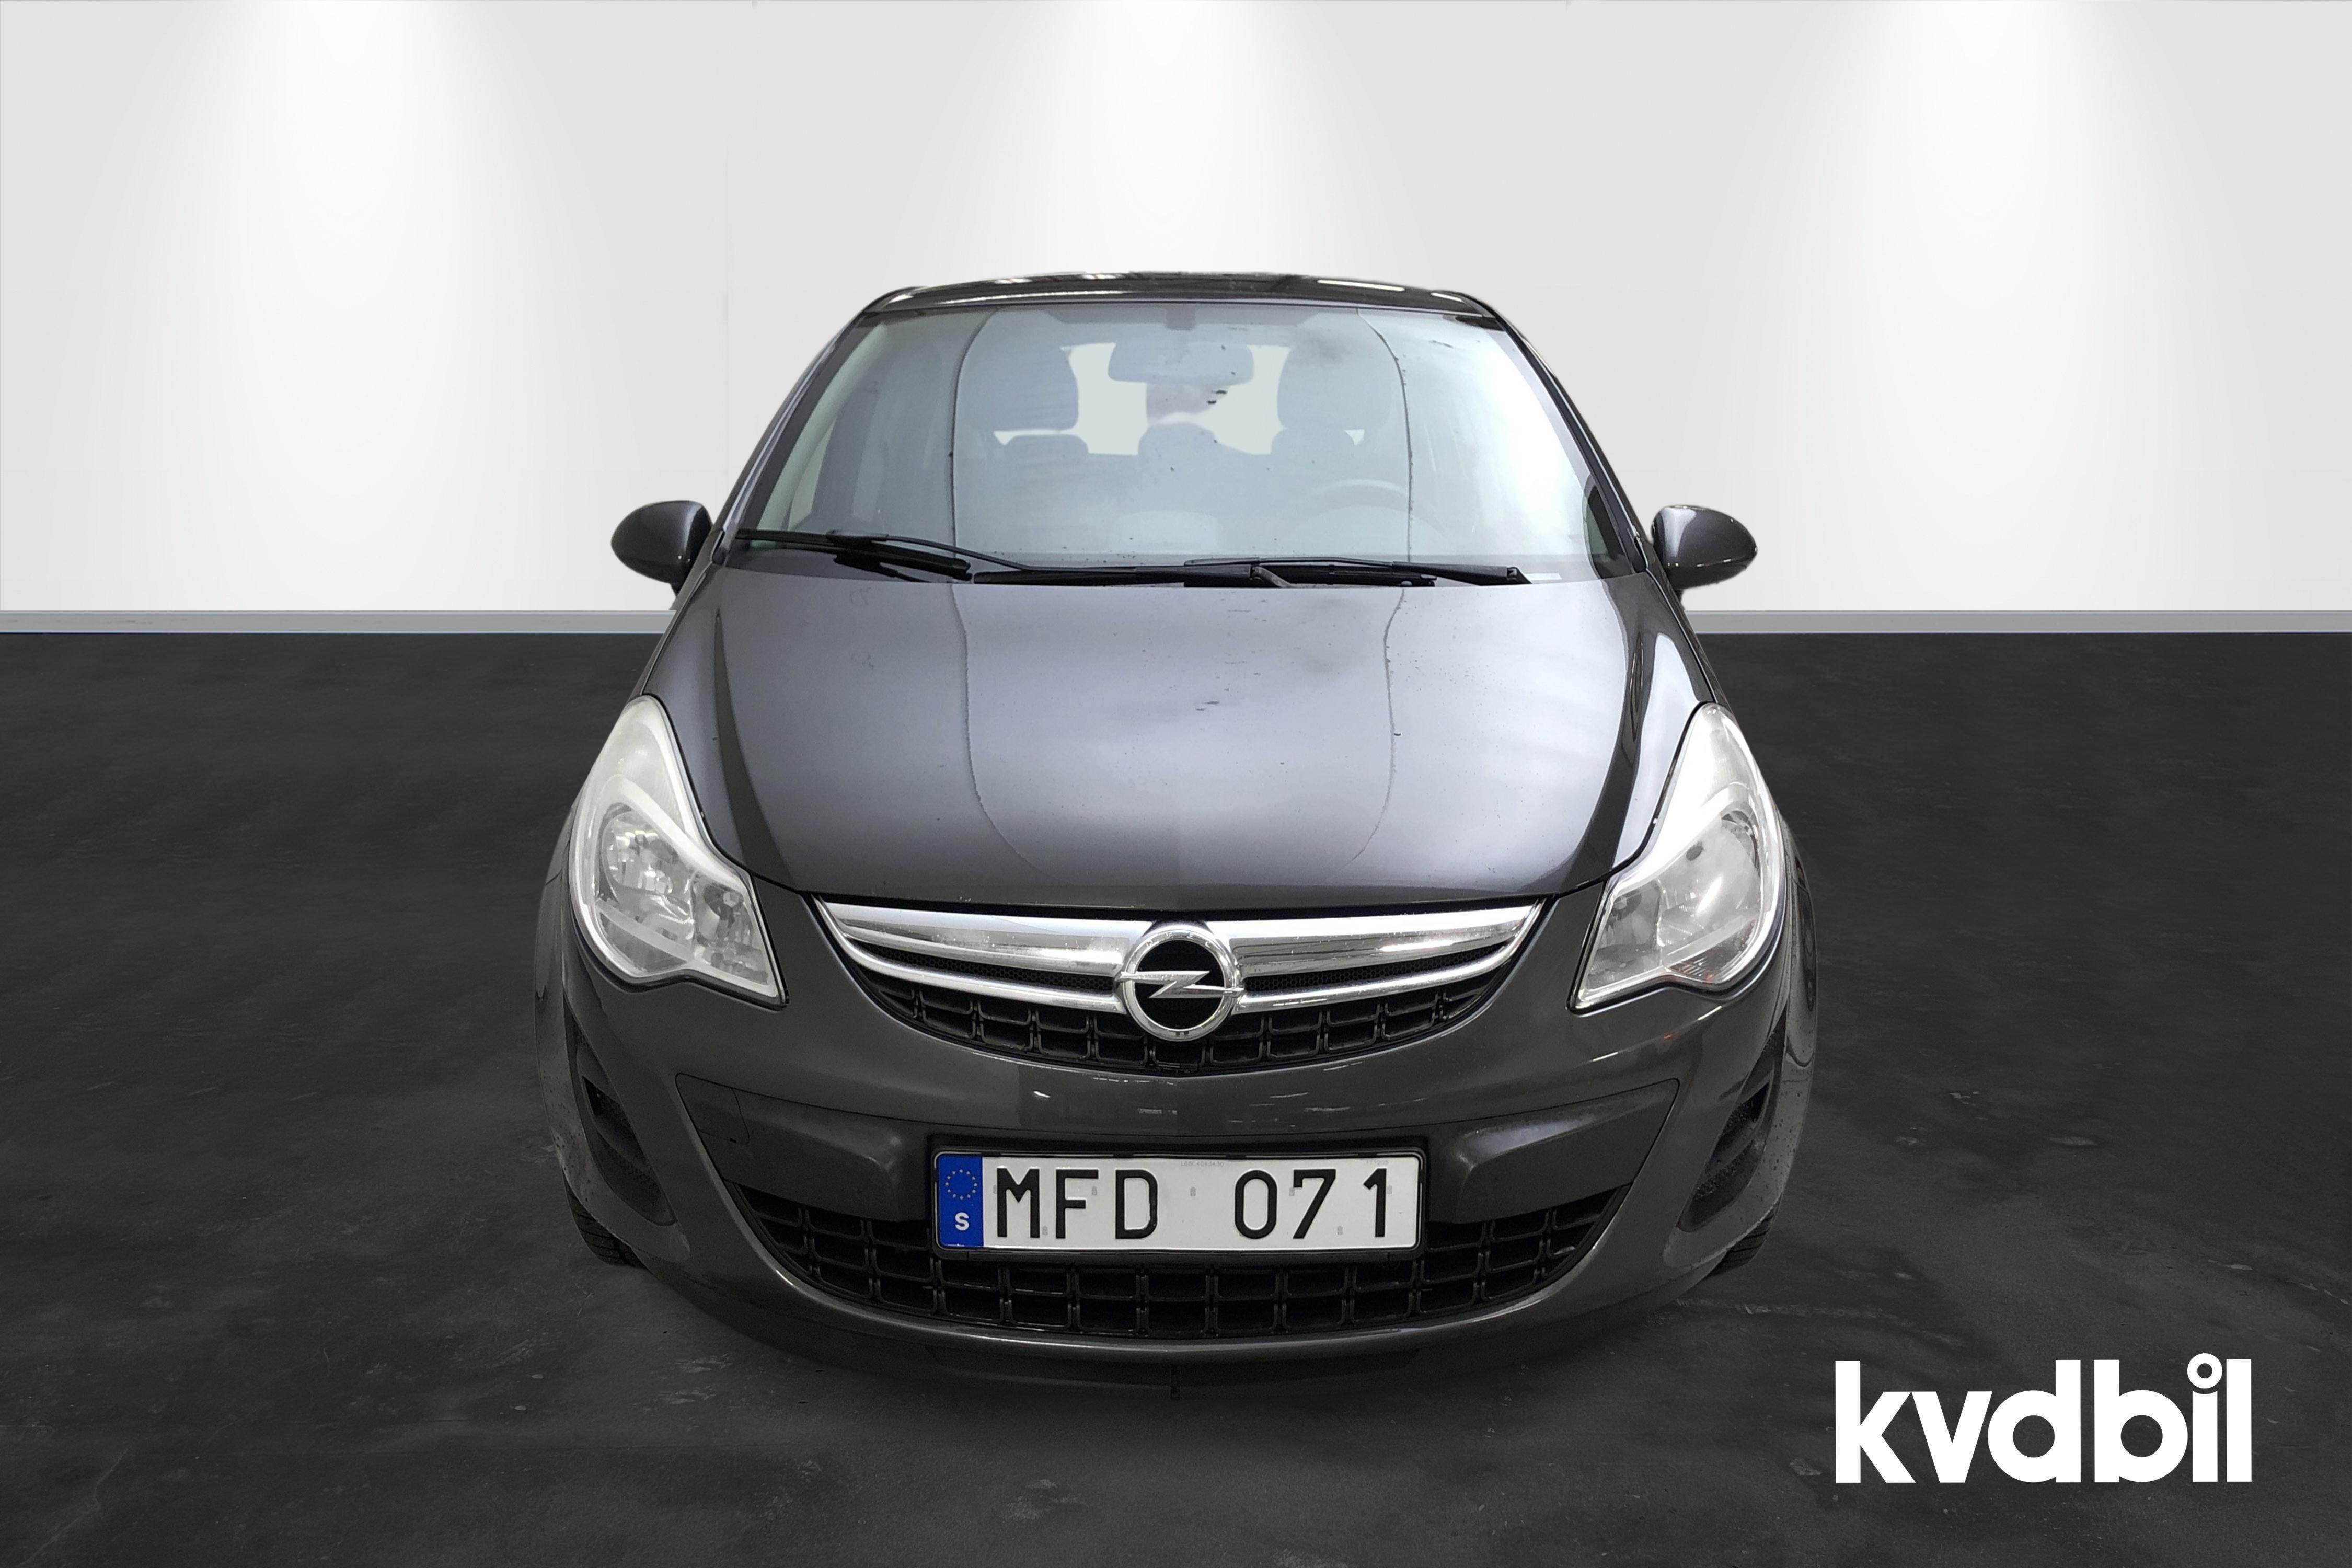 Opel Corsa 1.3 CDTI ecoFLEX 5dr (95hk) - 68 220 km - Manual - gray - 2012